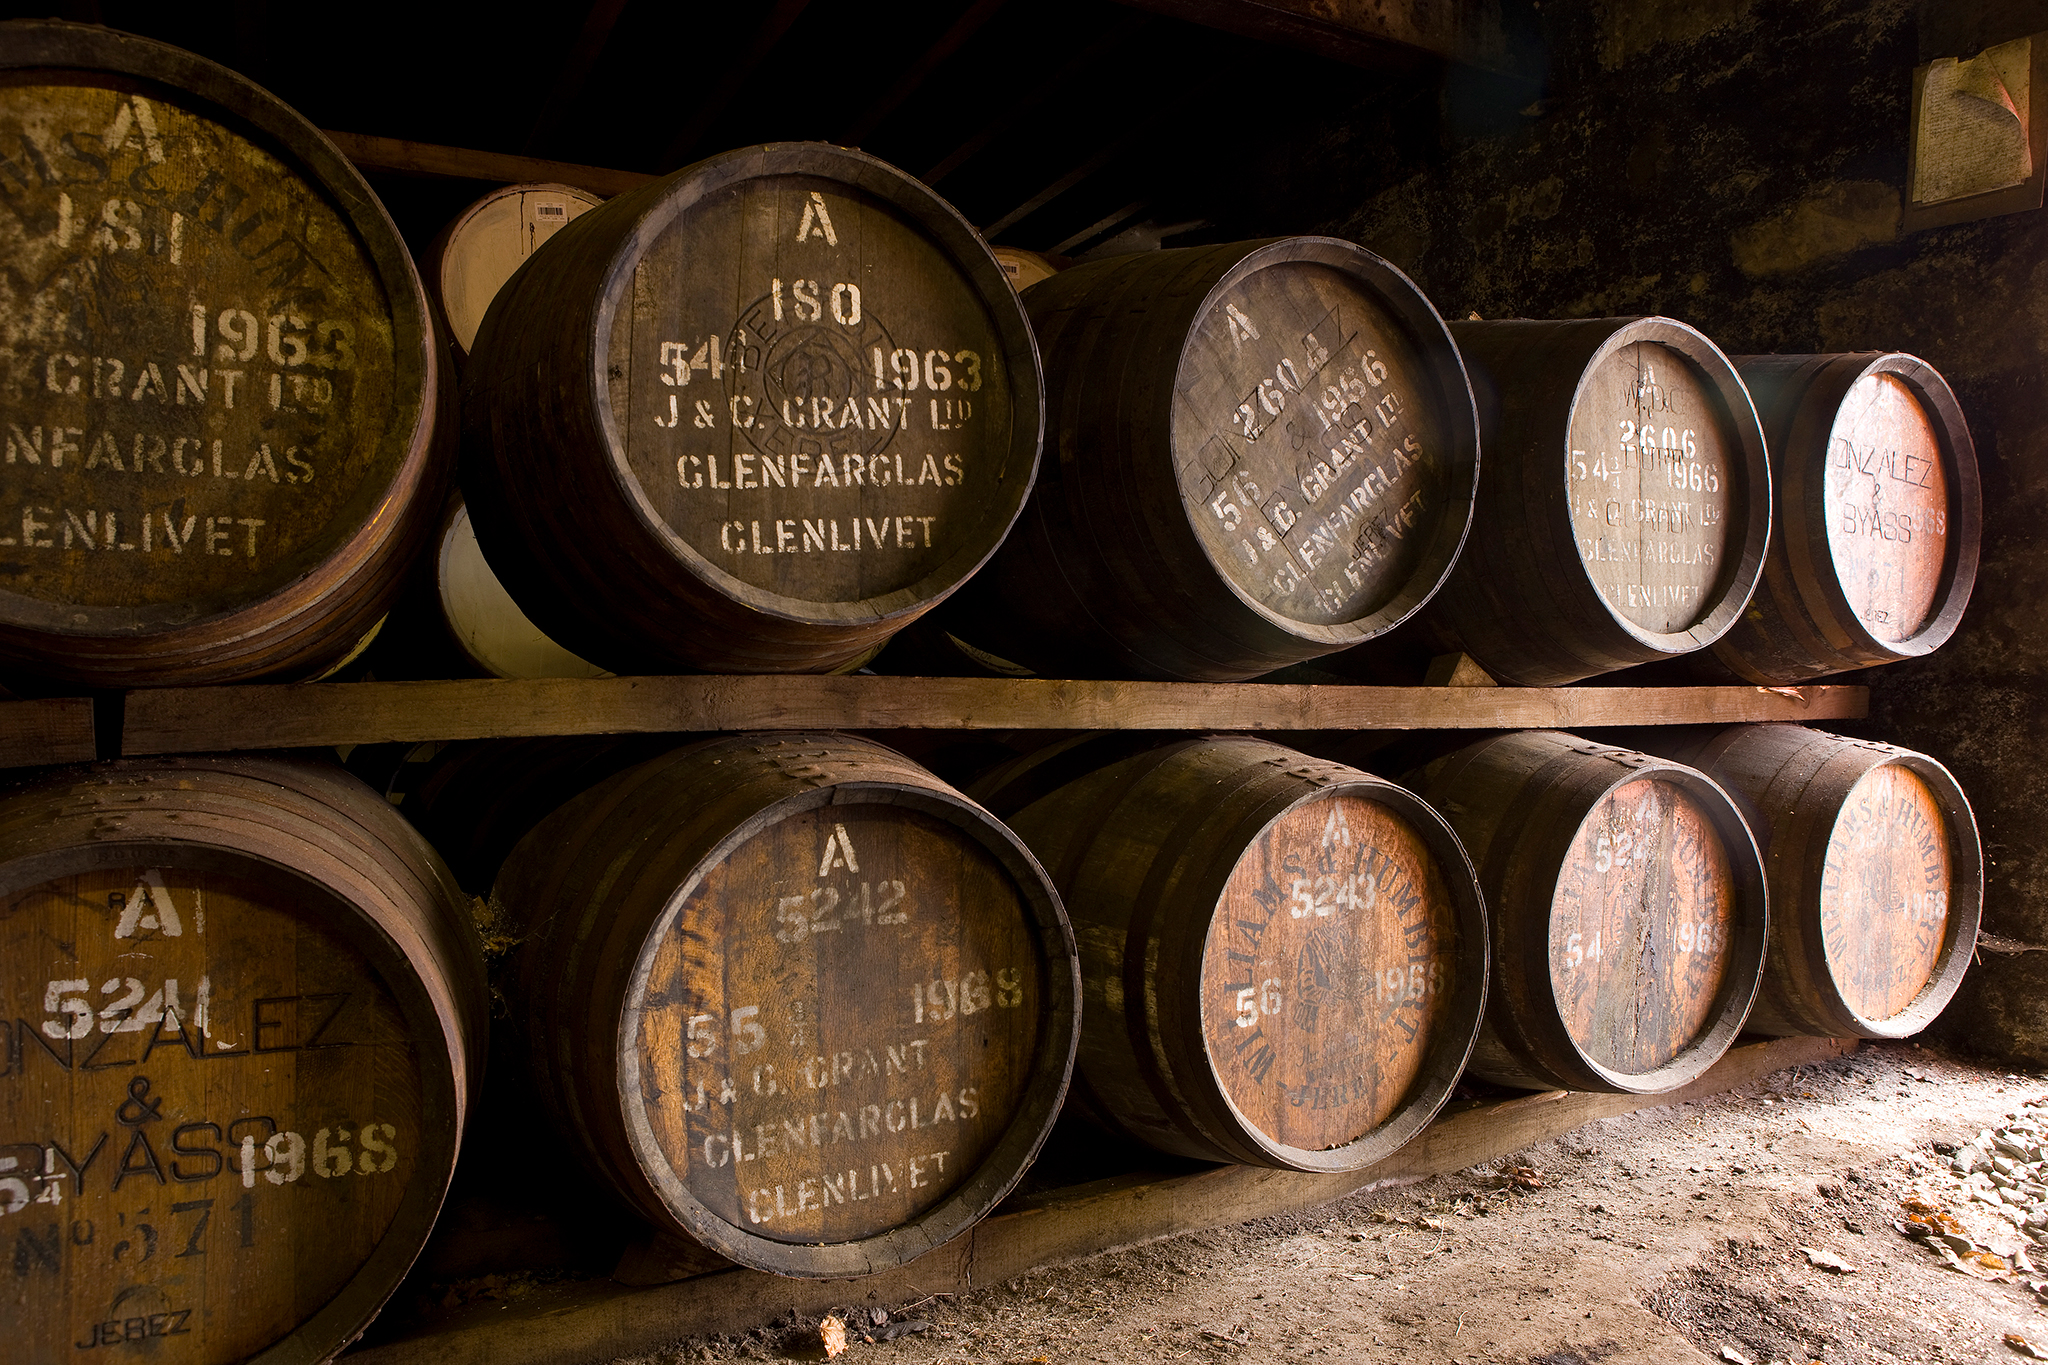 Whisky z ex sherry cask, czyli trochę o samych beczkach i ich transporcie